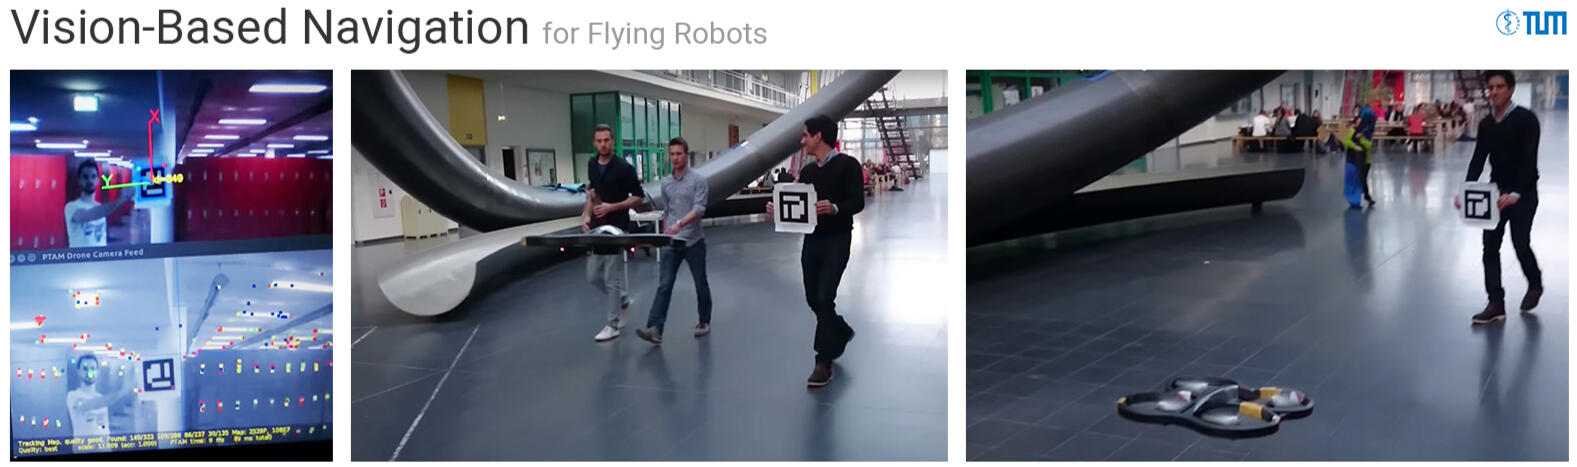 Vision-Based Navigation for Flying Robots